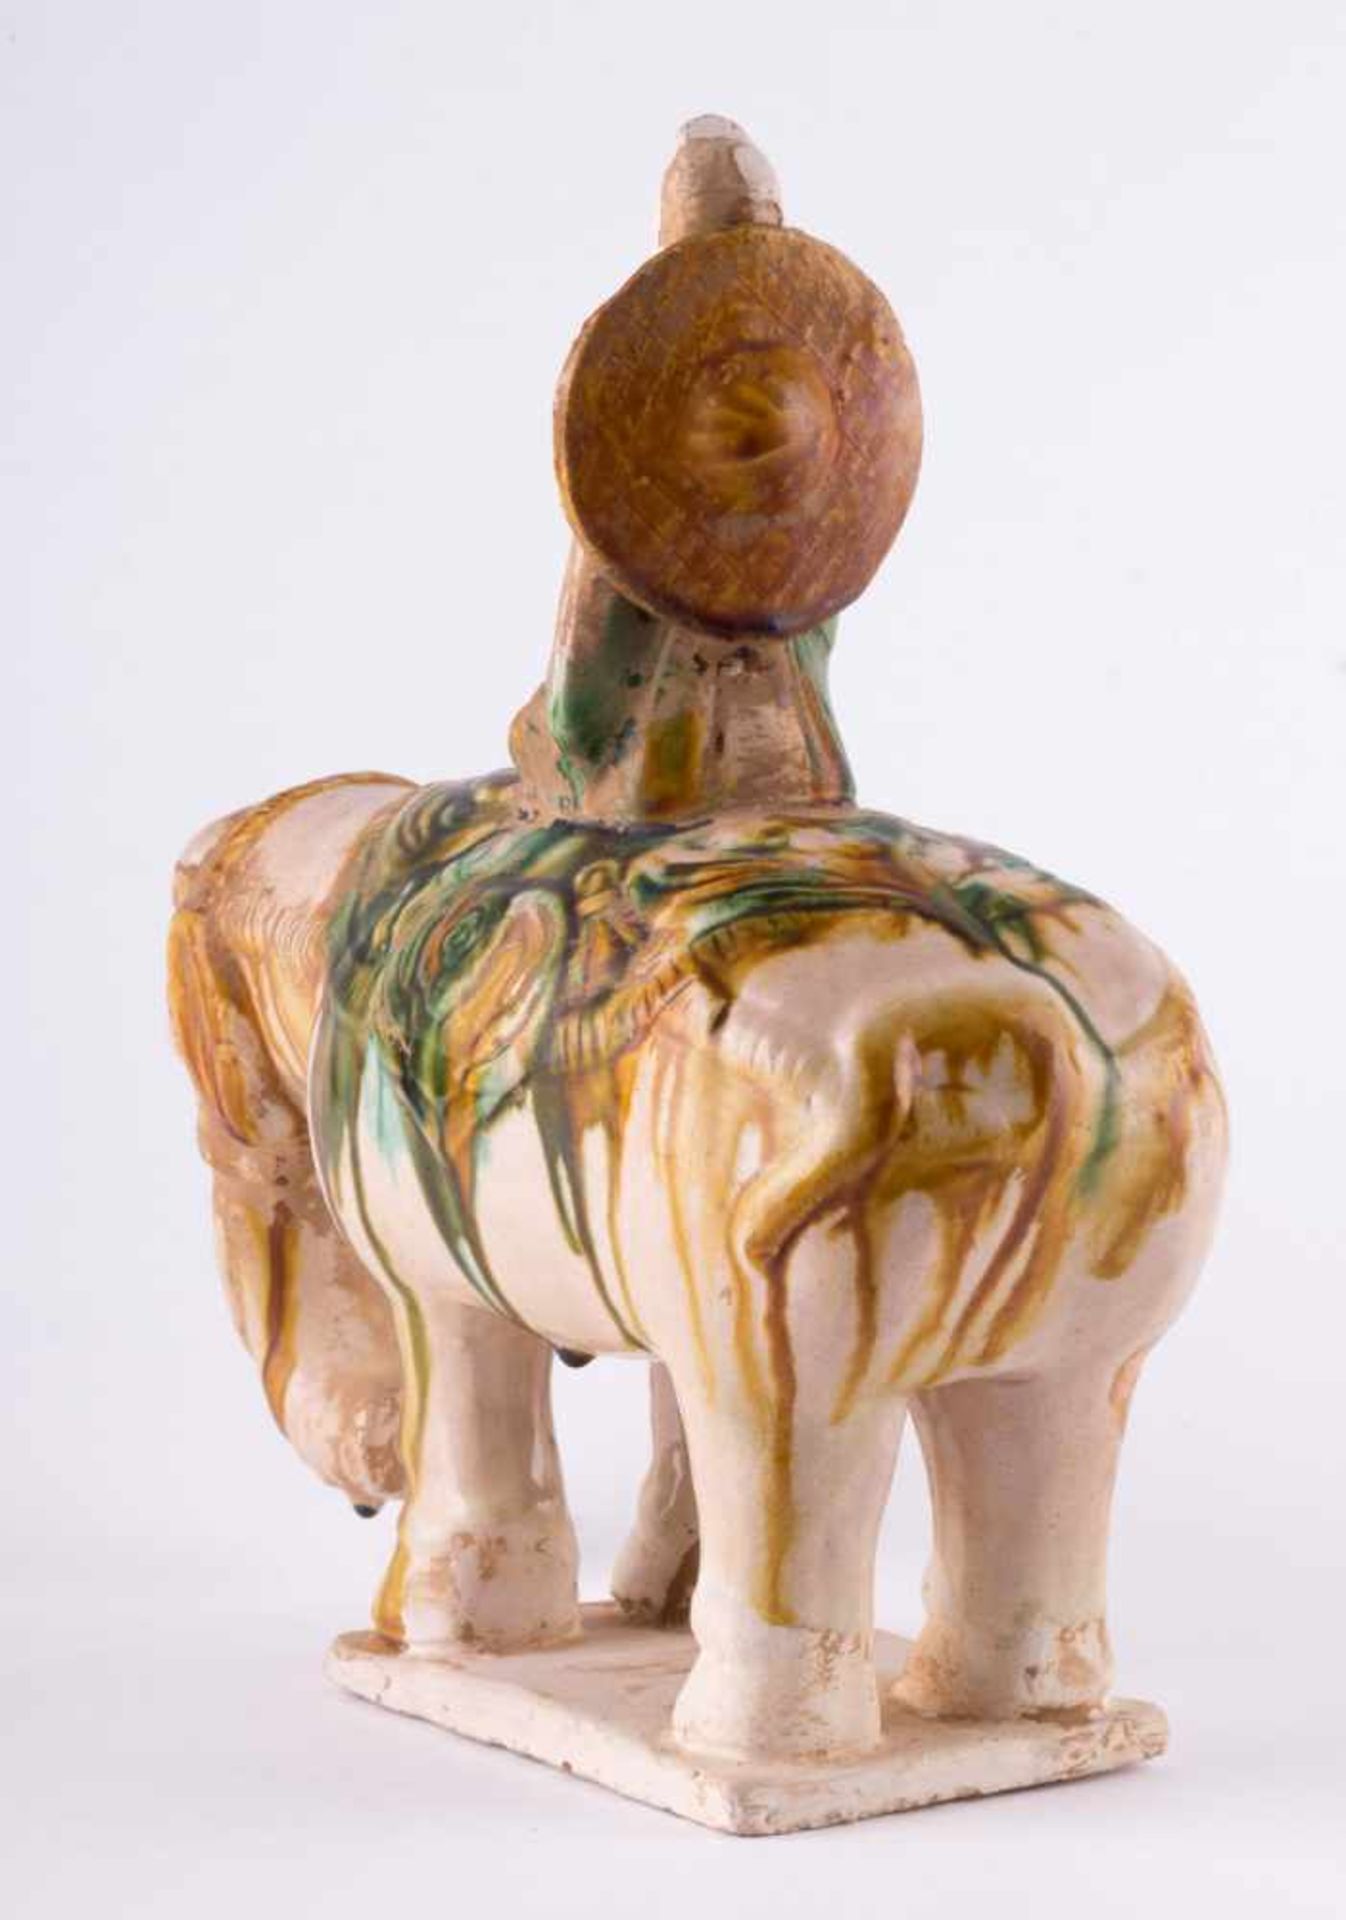 Elefant mit Reiter, China / Elephant with rider, China Keramikskulptur, teilweise glasiert, - Bild 3 aus 6